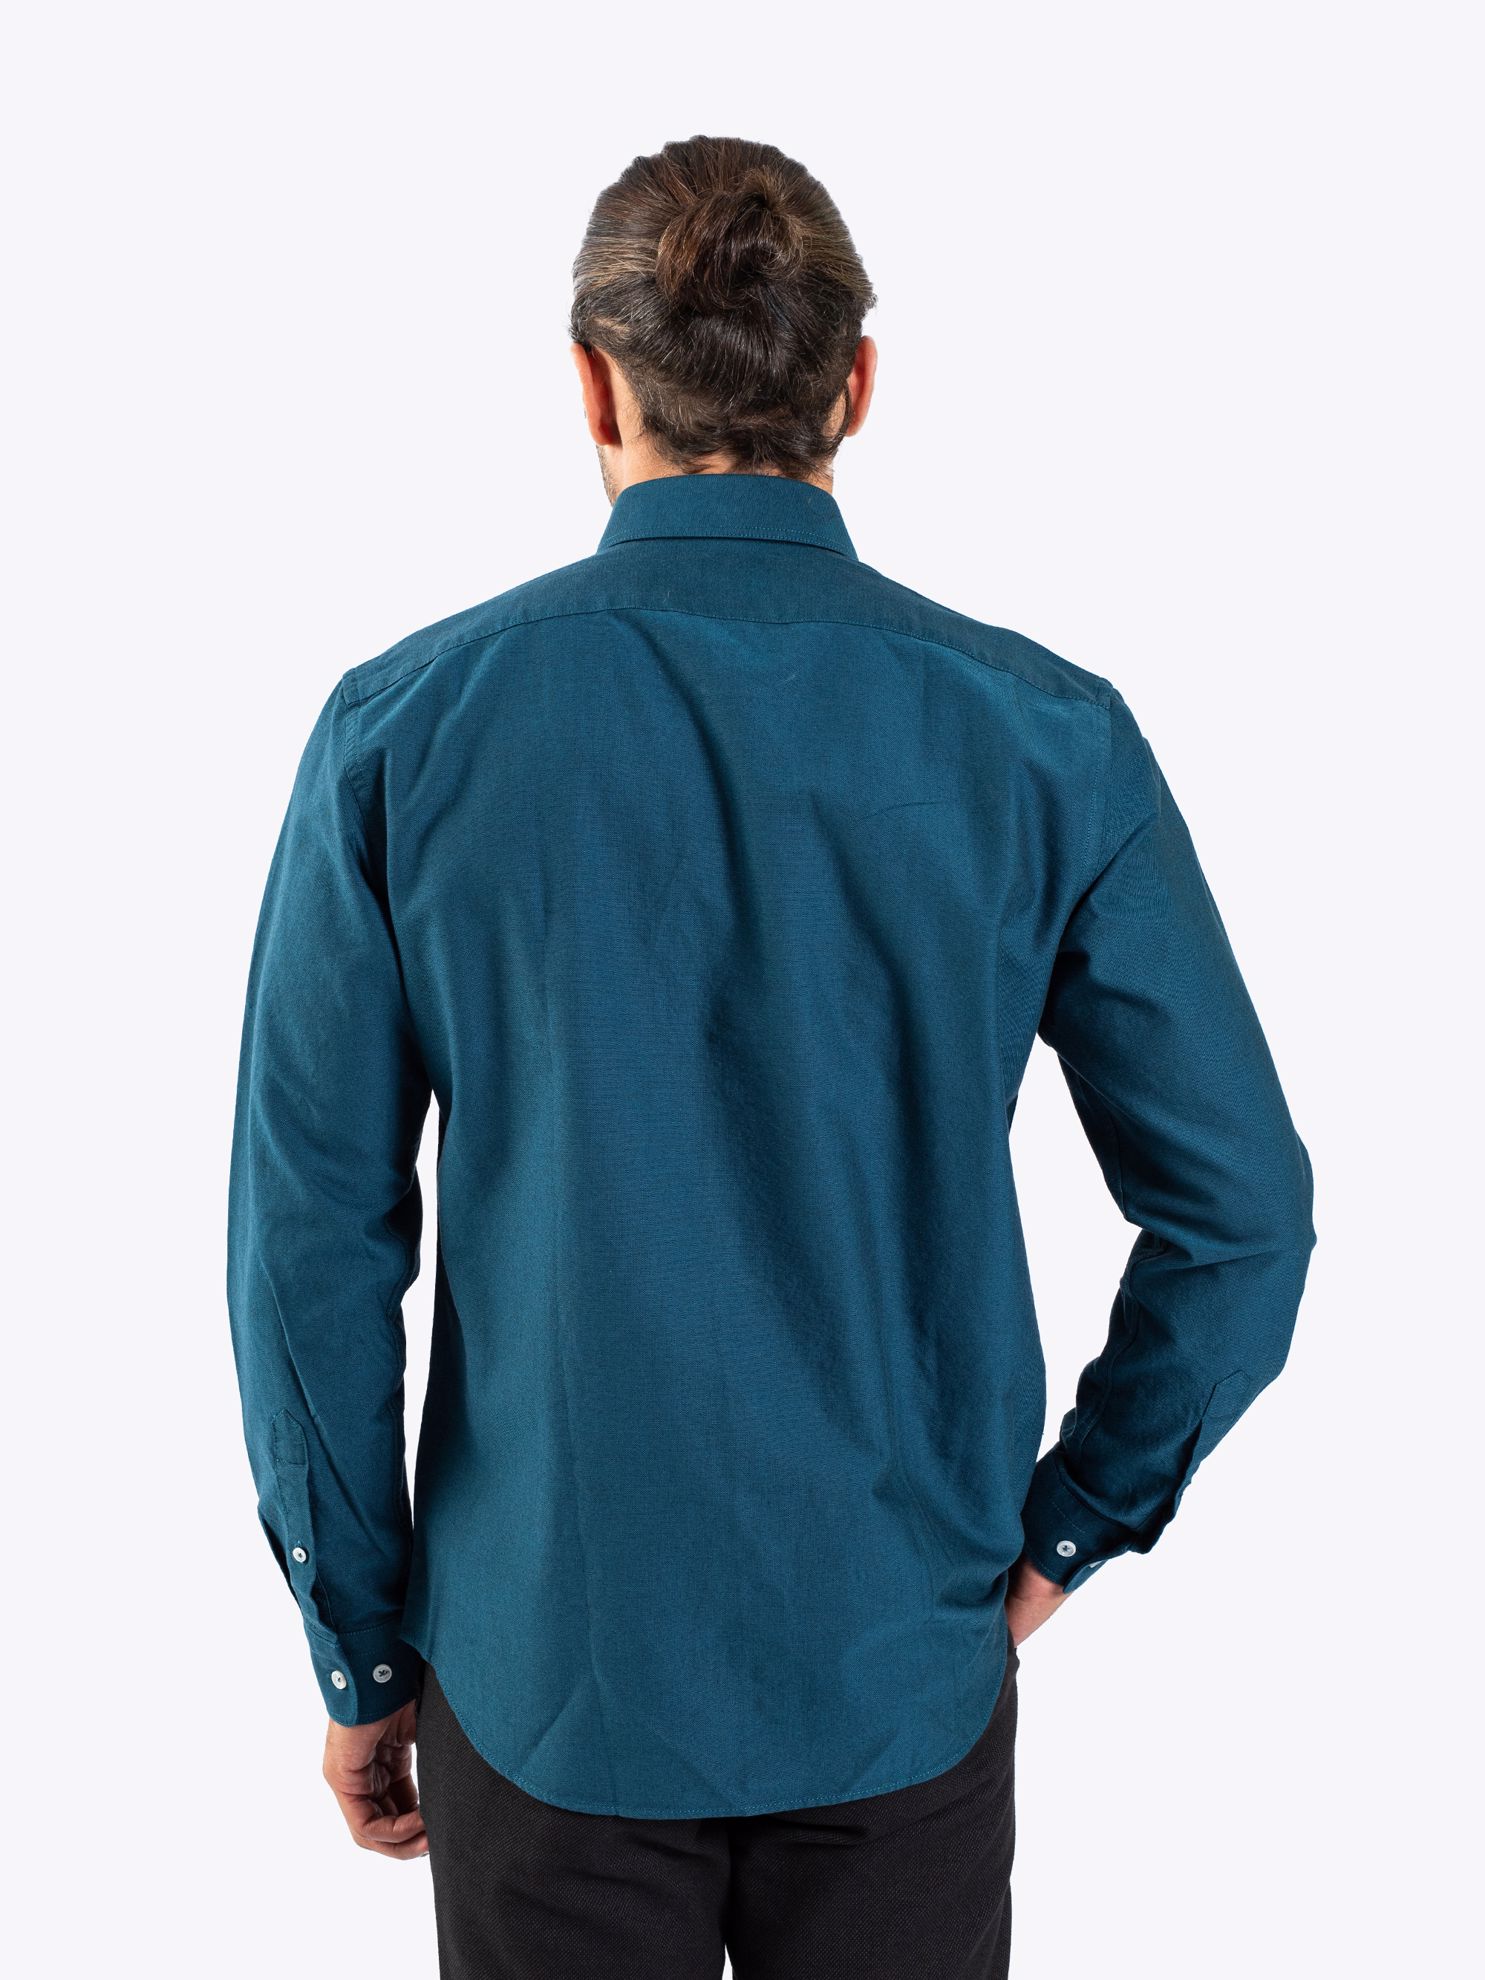 Karaca Erkek Slim Fit Gömlek-Petrol. ürün görseli